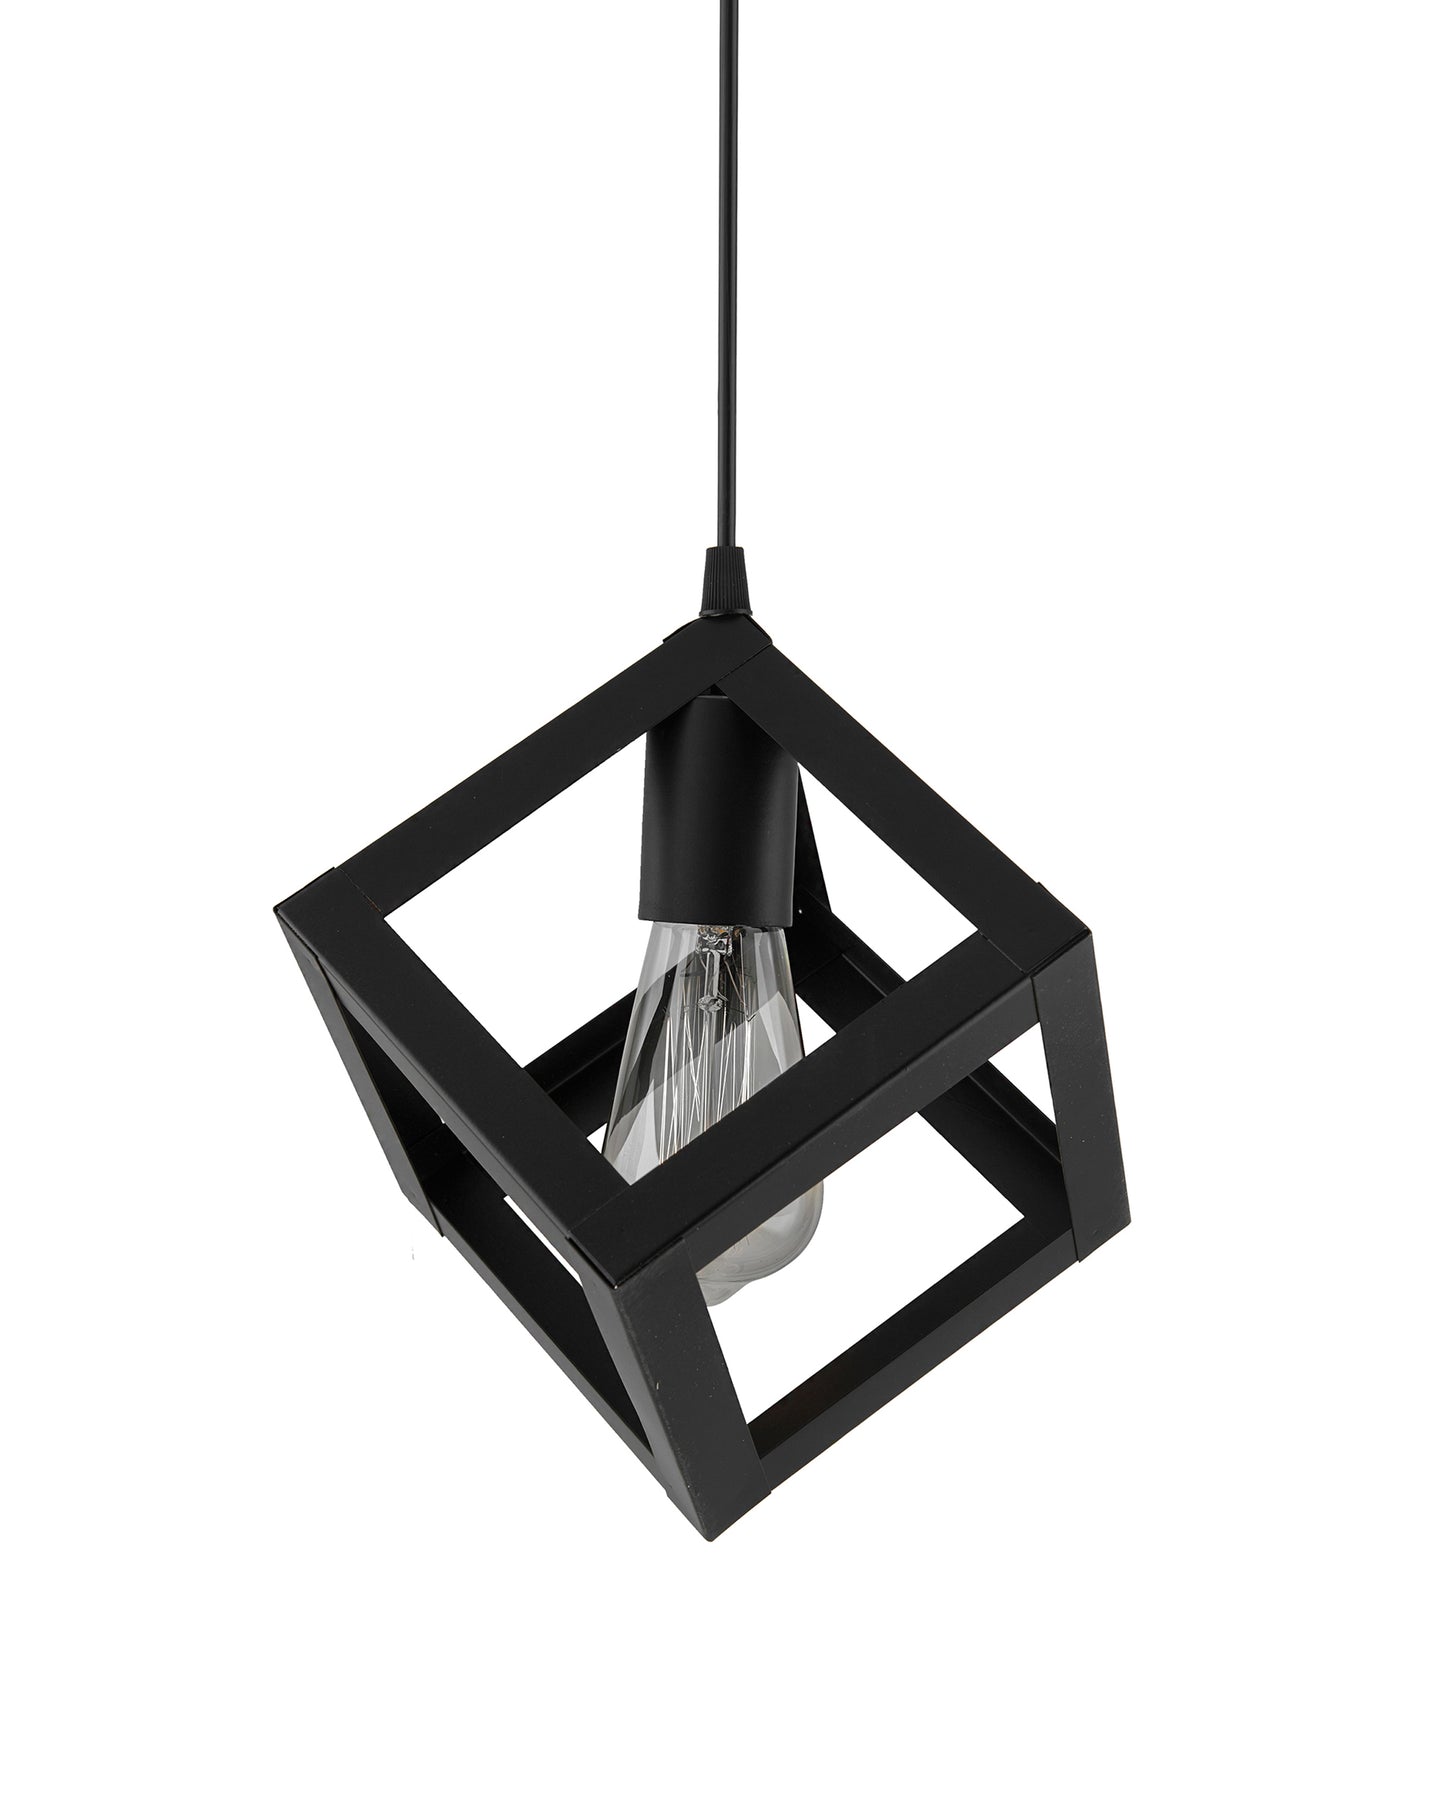 Edison Filament Hanging Cube 6", E27 Holder, Decorative, Black, URBAN Retro, nordic style